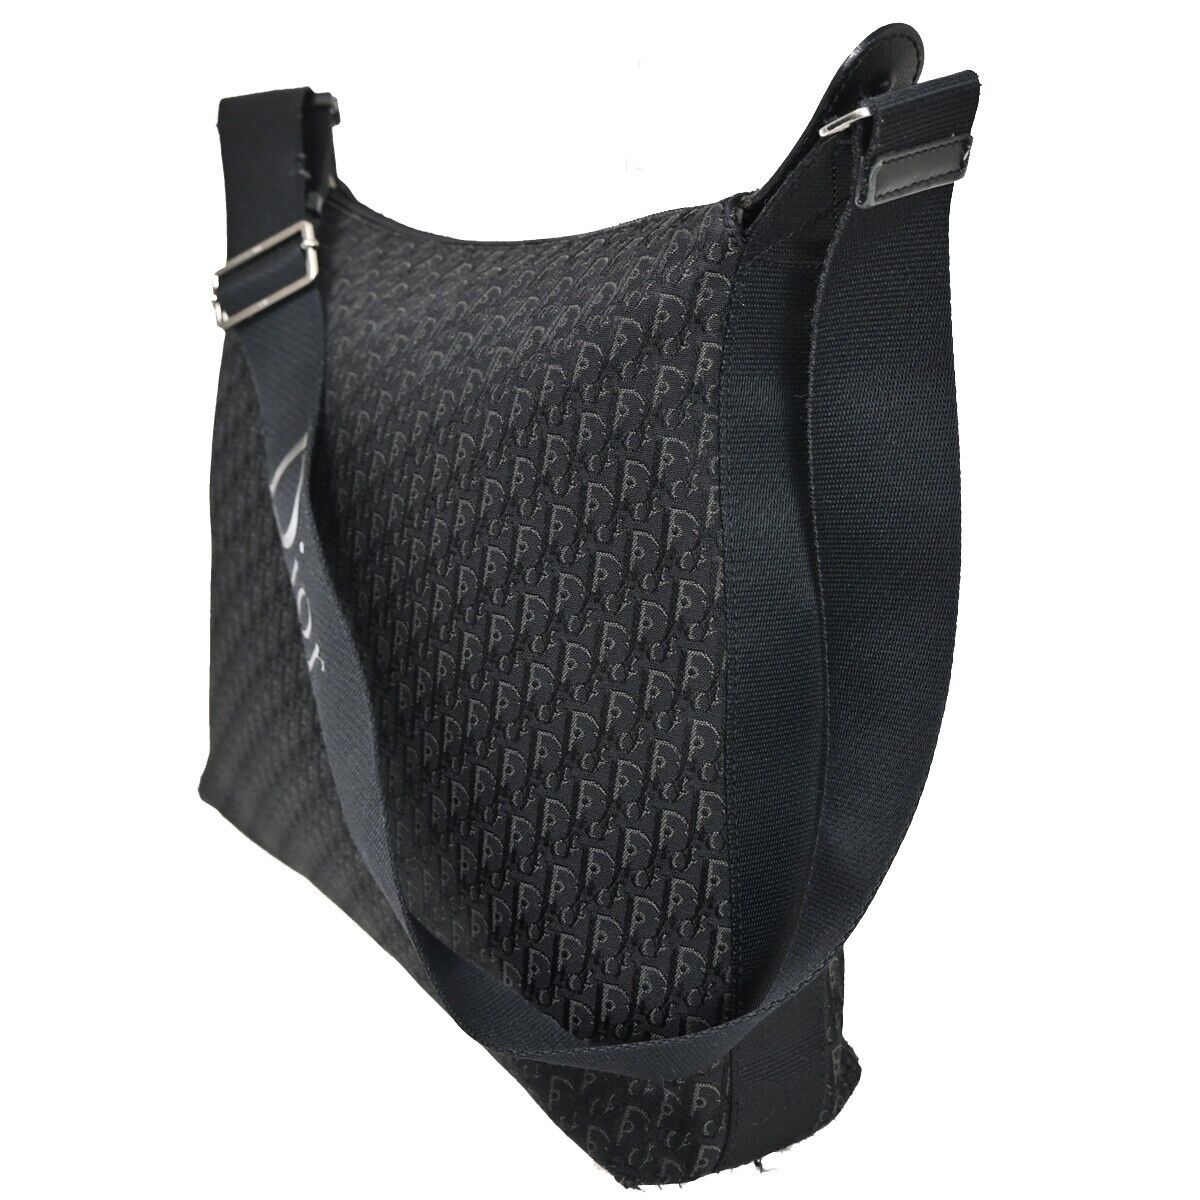 Dior Trotter Black Canvas Shoulder Bag (Pre-Owned)